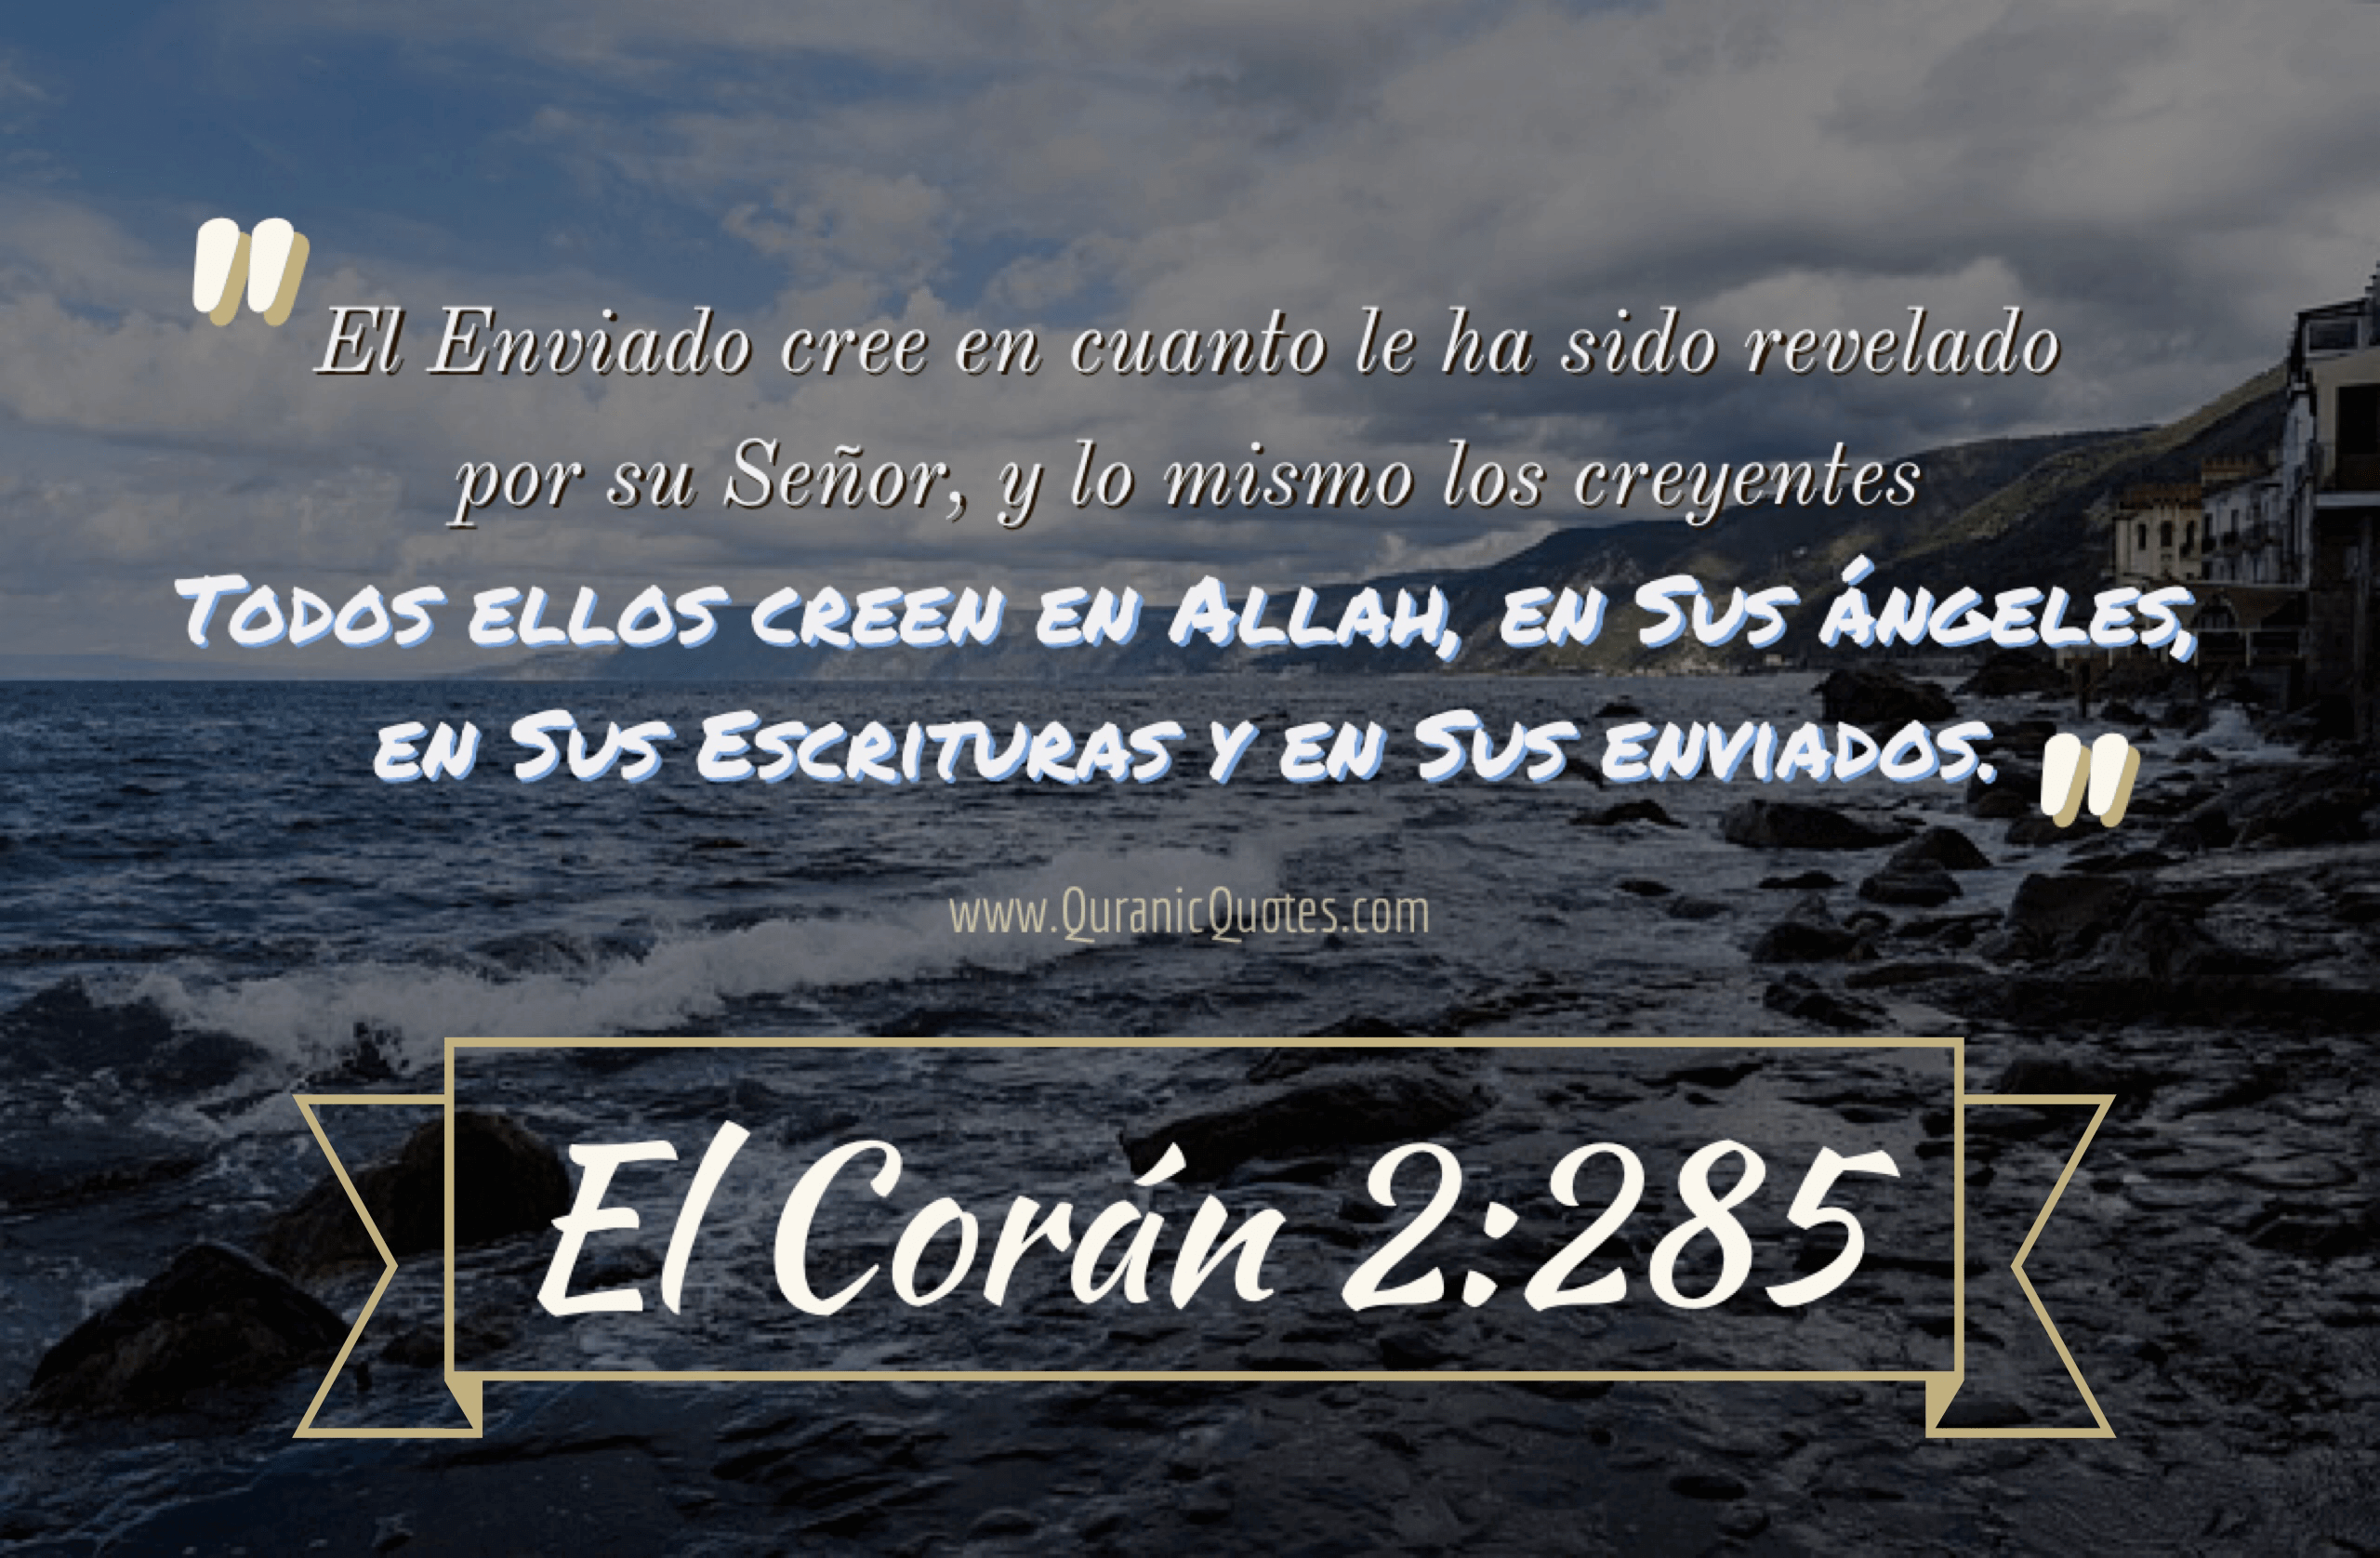 Quranic Quotes Español #143